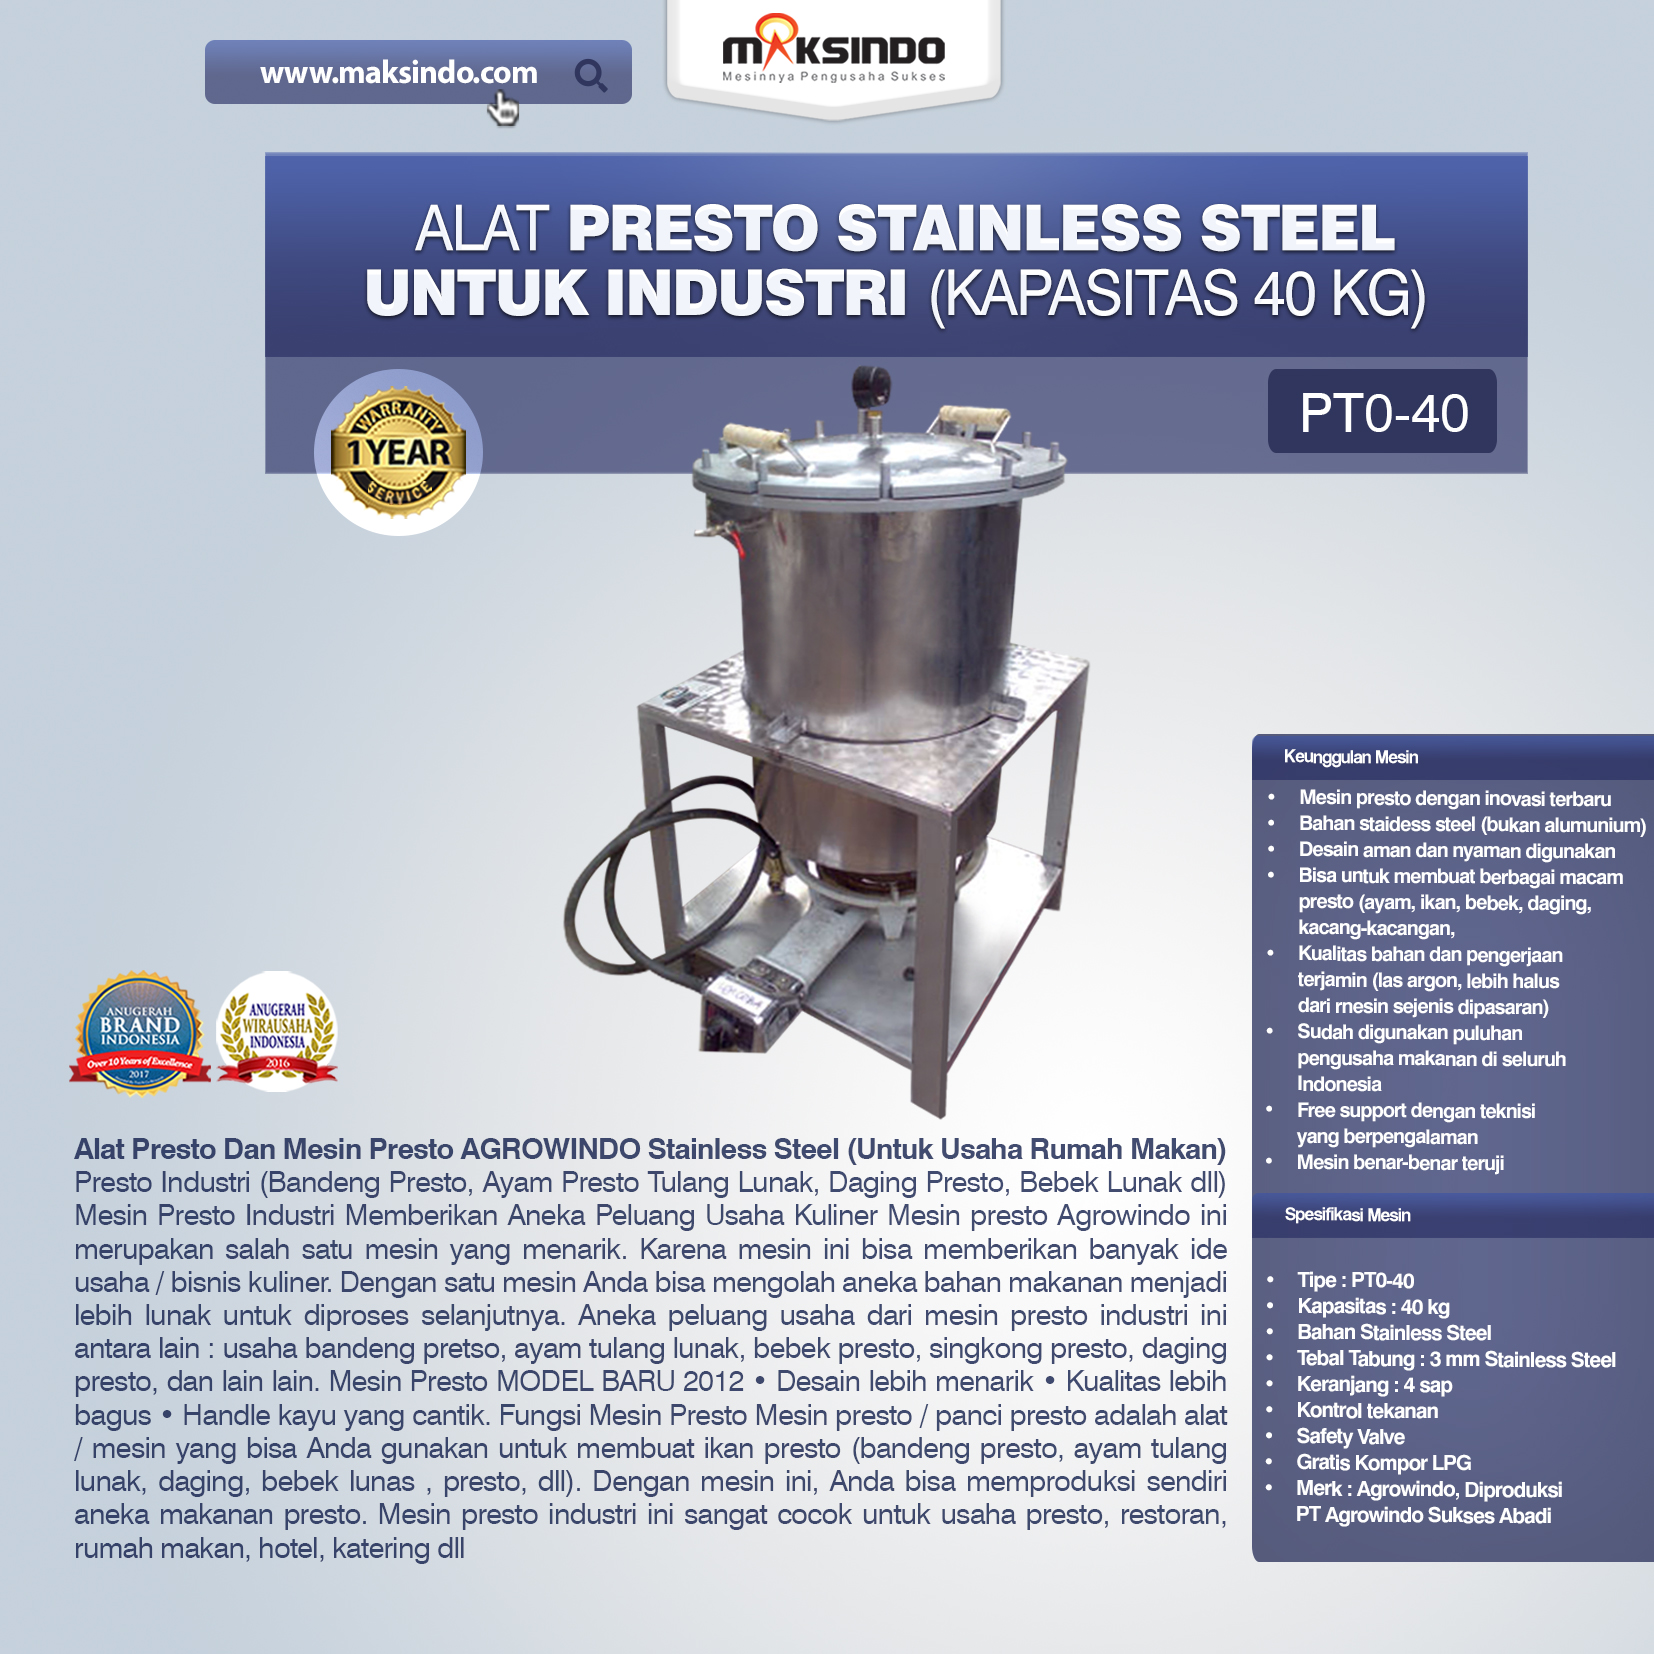 Jual Mesin Presto Stainless Steel Untuk Industri di Bandung